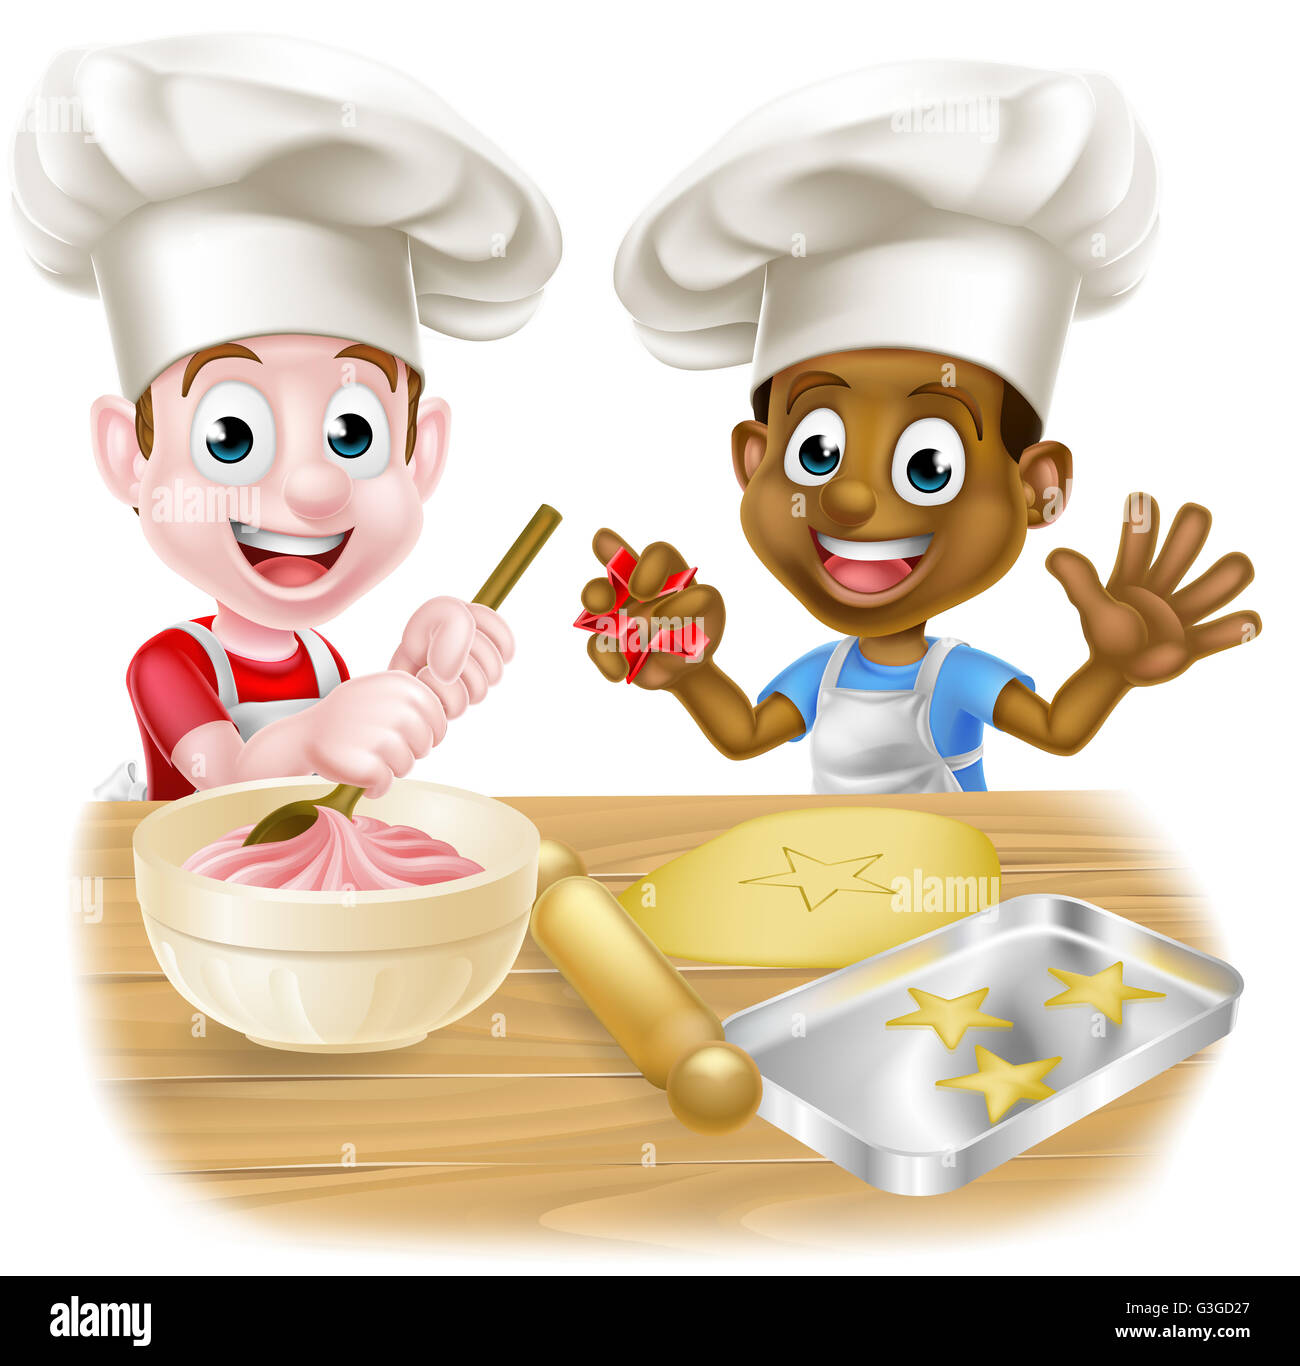 Caricature les garçons, l'un noir un blanc, habillés comme des chefs ou des gâteaux et des biscuits de traitement au four de boulangerie en chef Banque D'Images